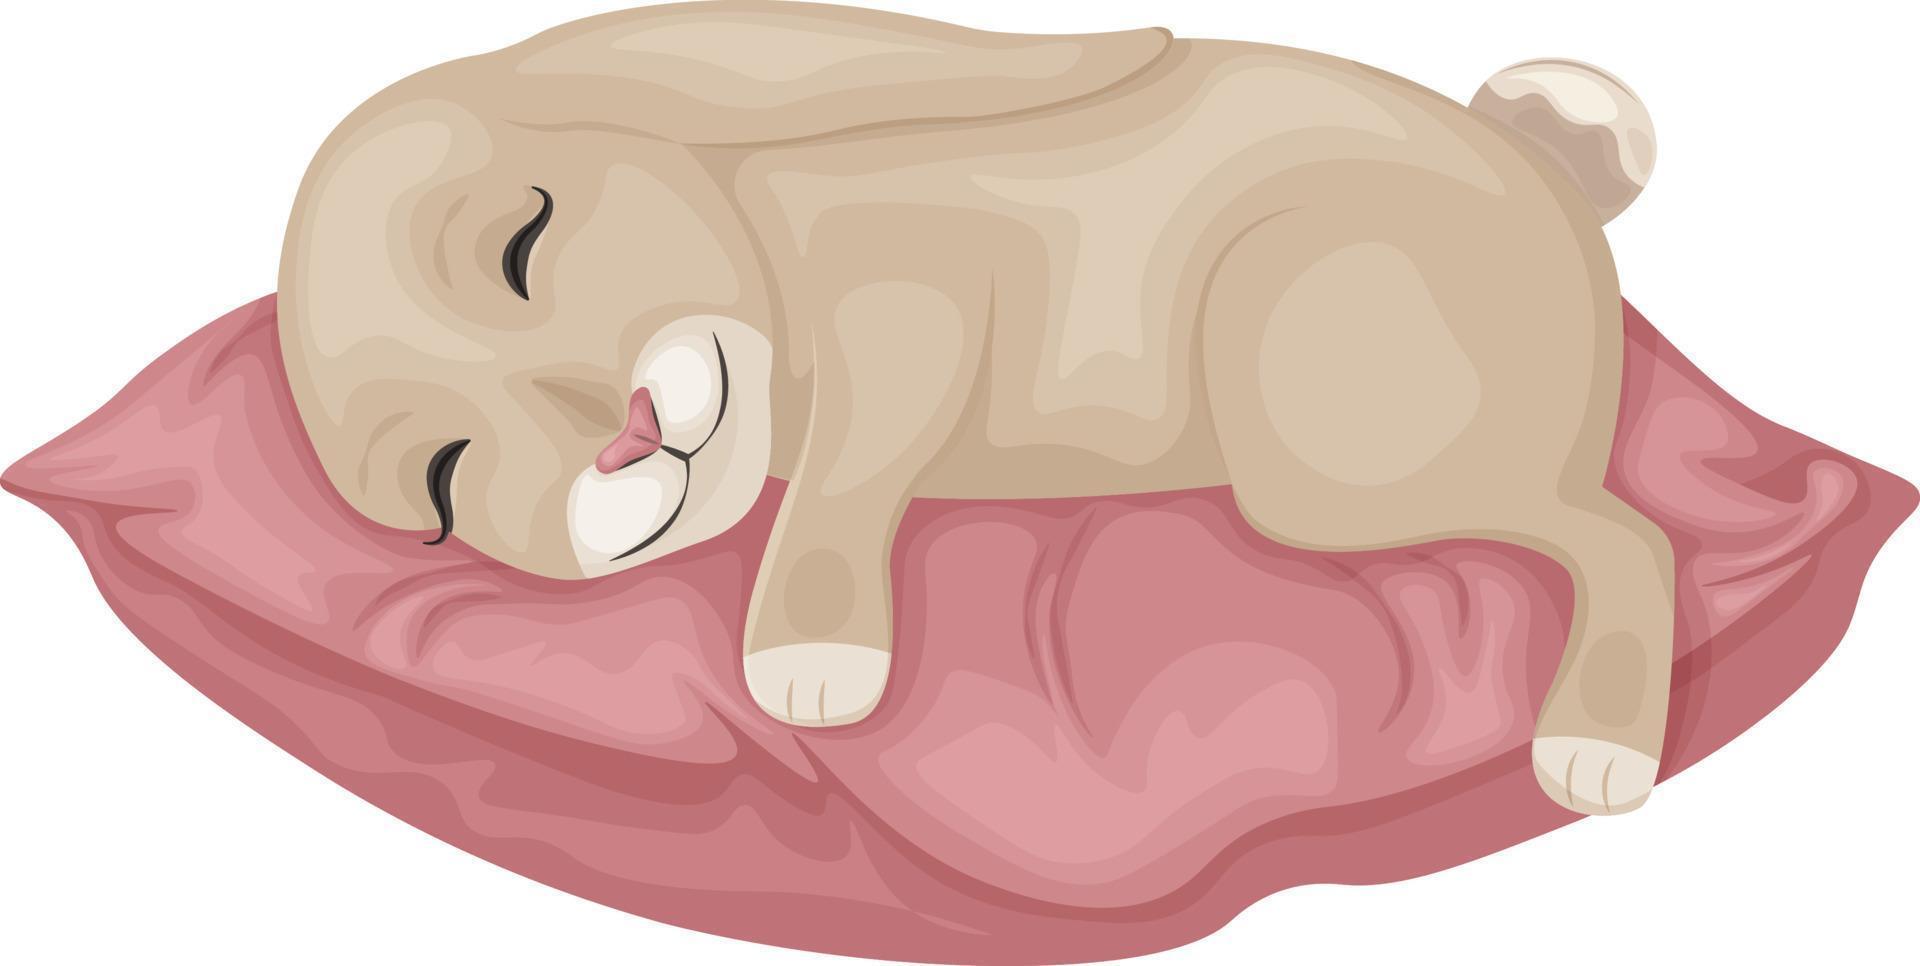 lapin sur l'oreiller. l'image d'un lapin mignon allongé sur un oreiller moelleux. un lièvre endormi sur un oreiller. illustration vectorielle isolée sur fond blanc vecteur